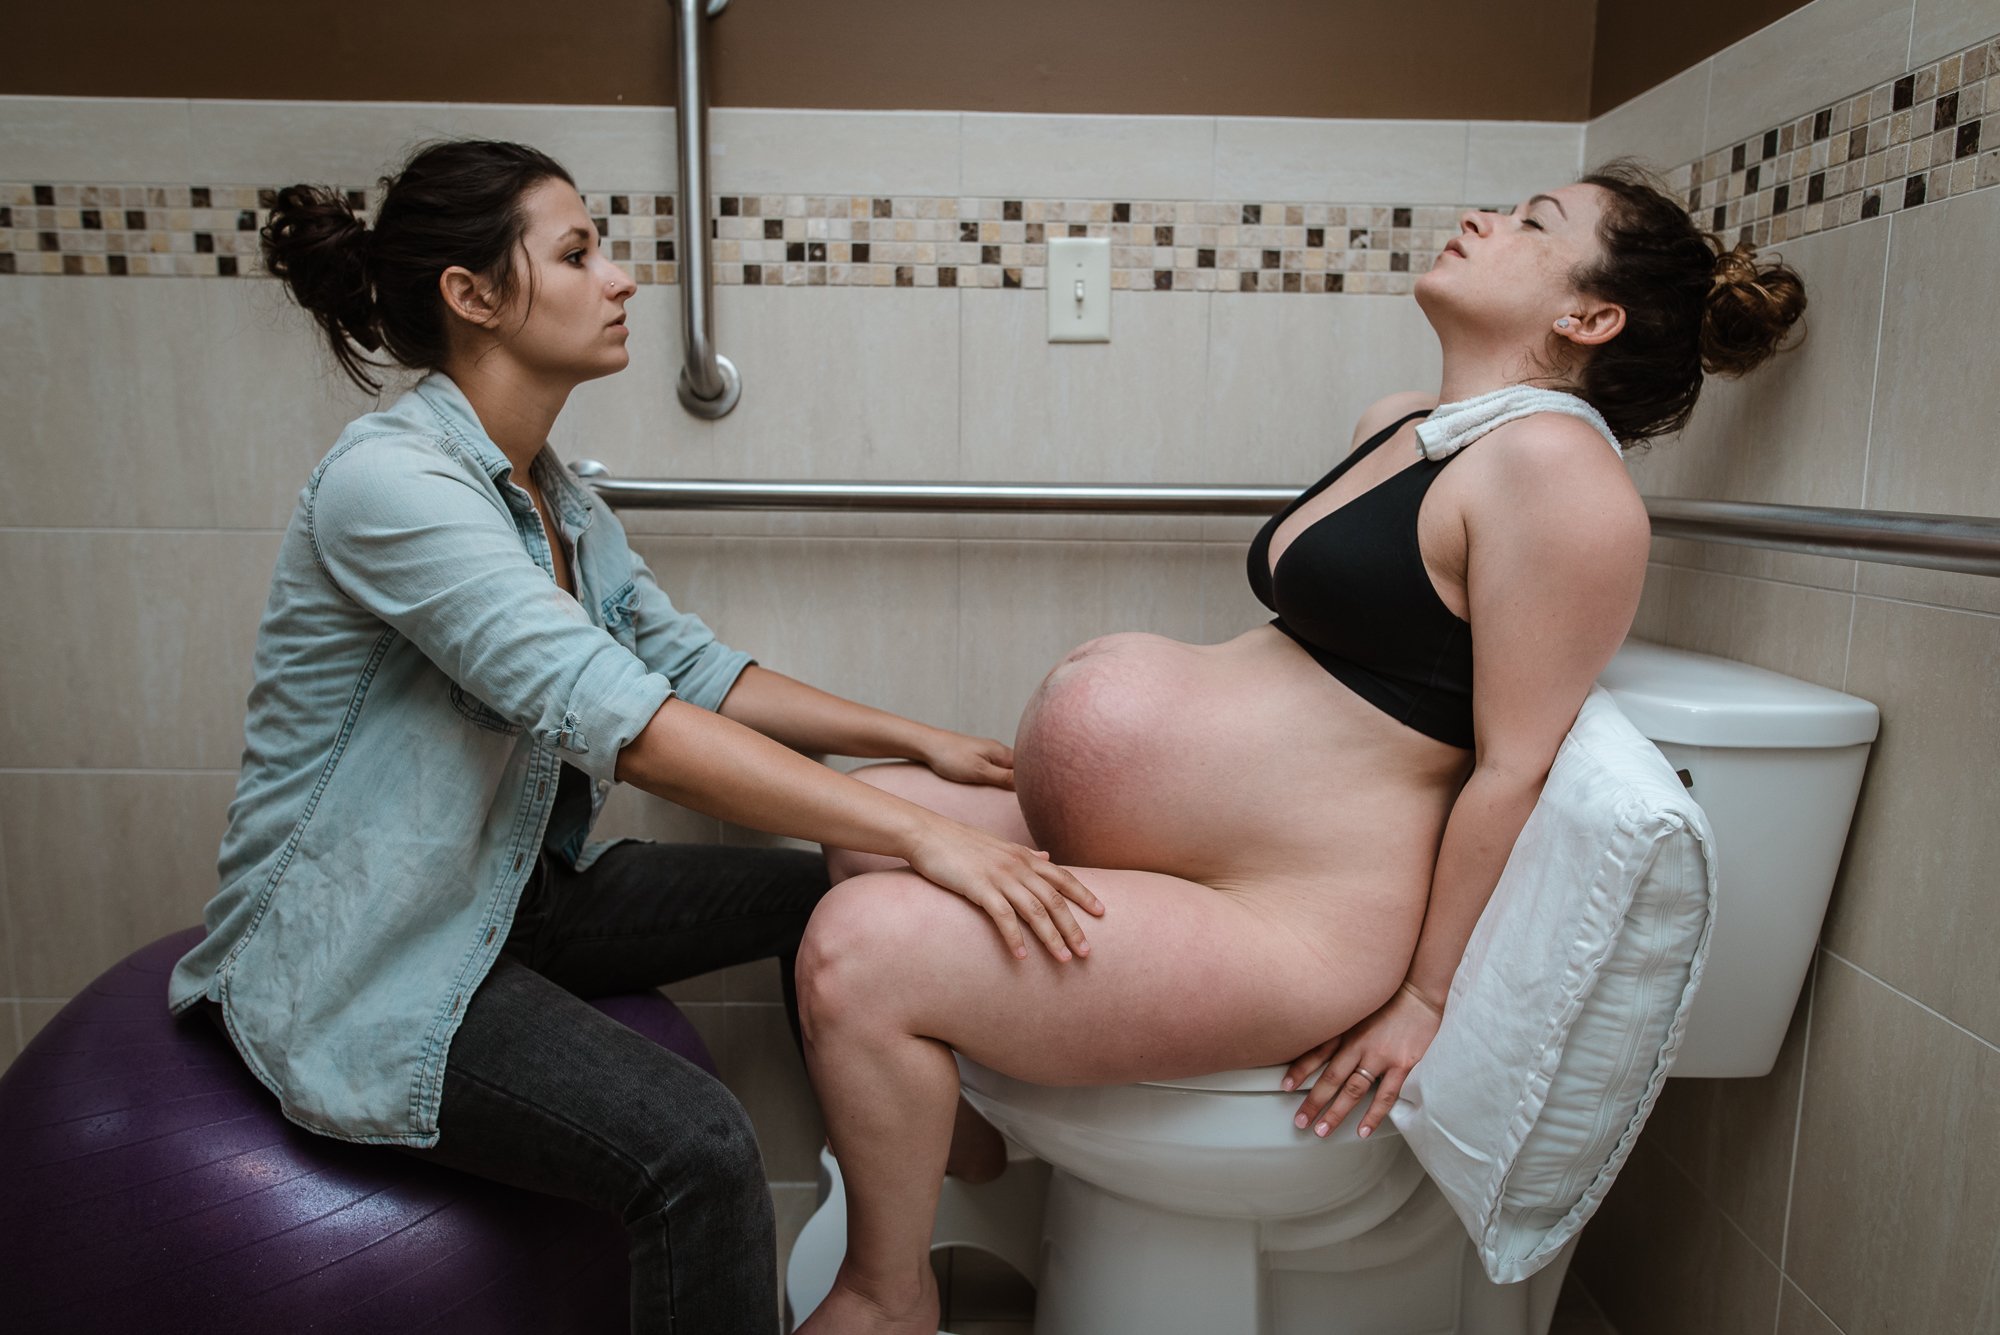 Беременная рожает в воде (65 фото) - Порно фото голых девушек